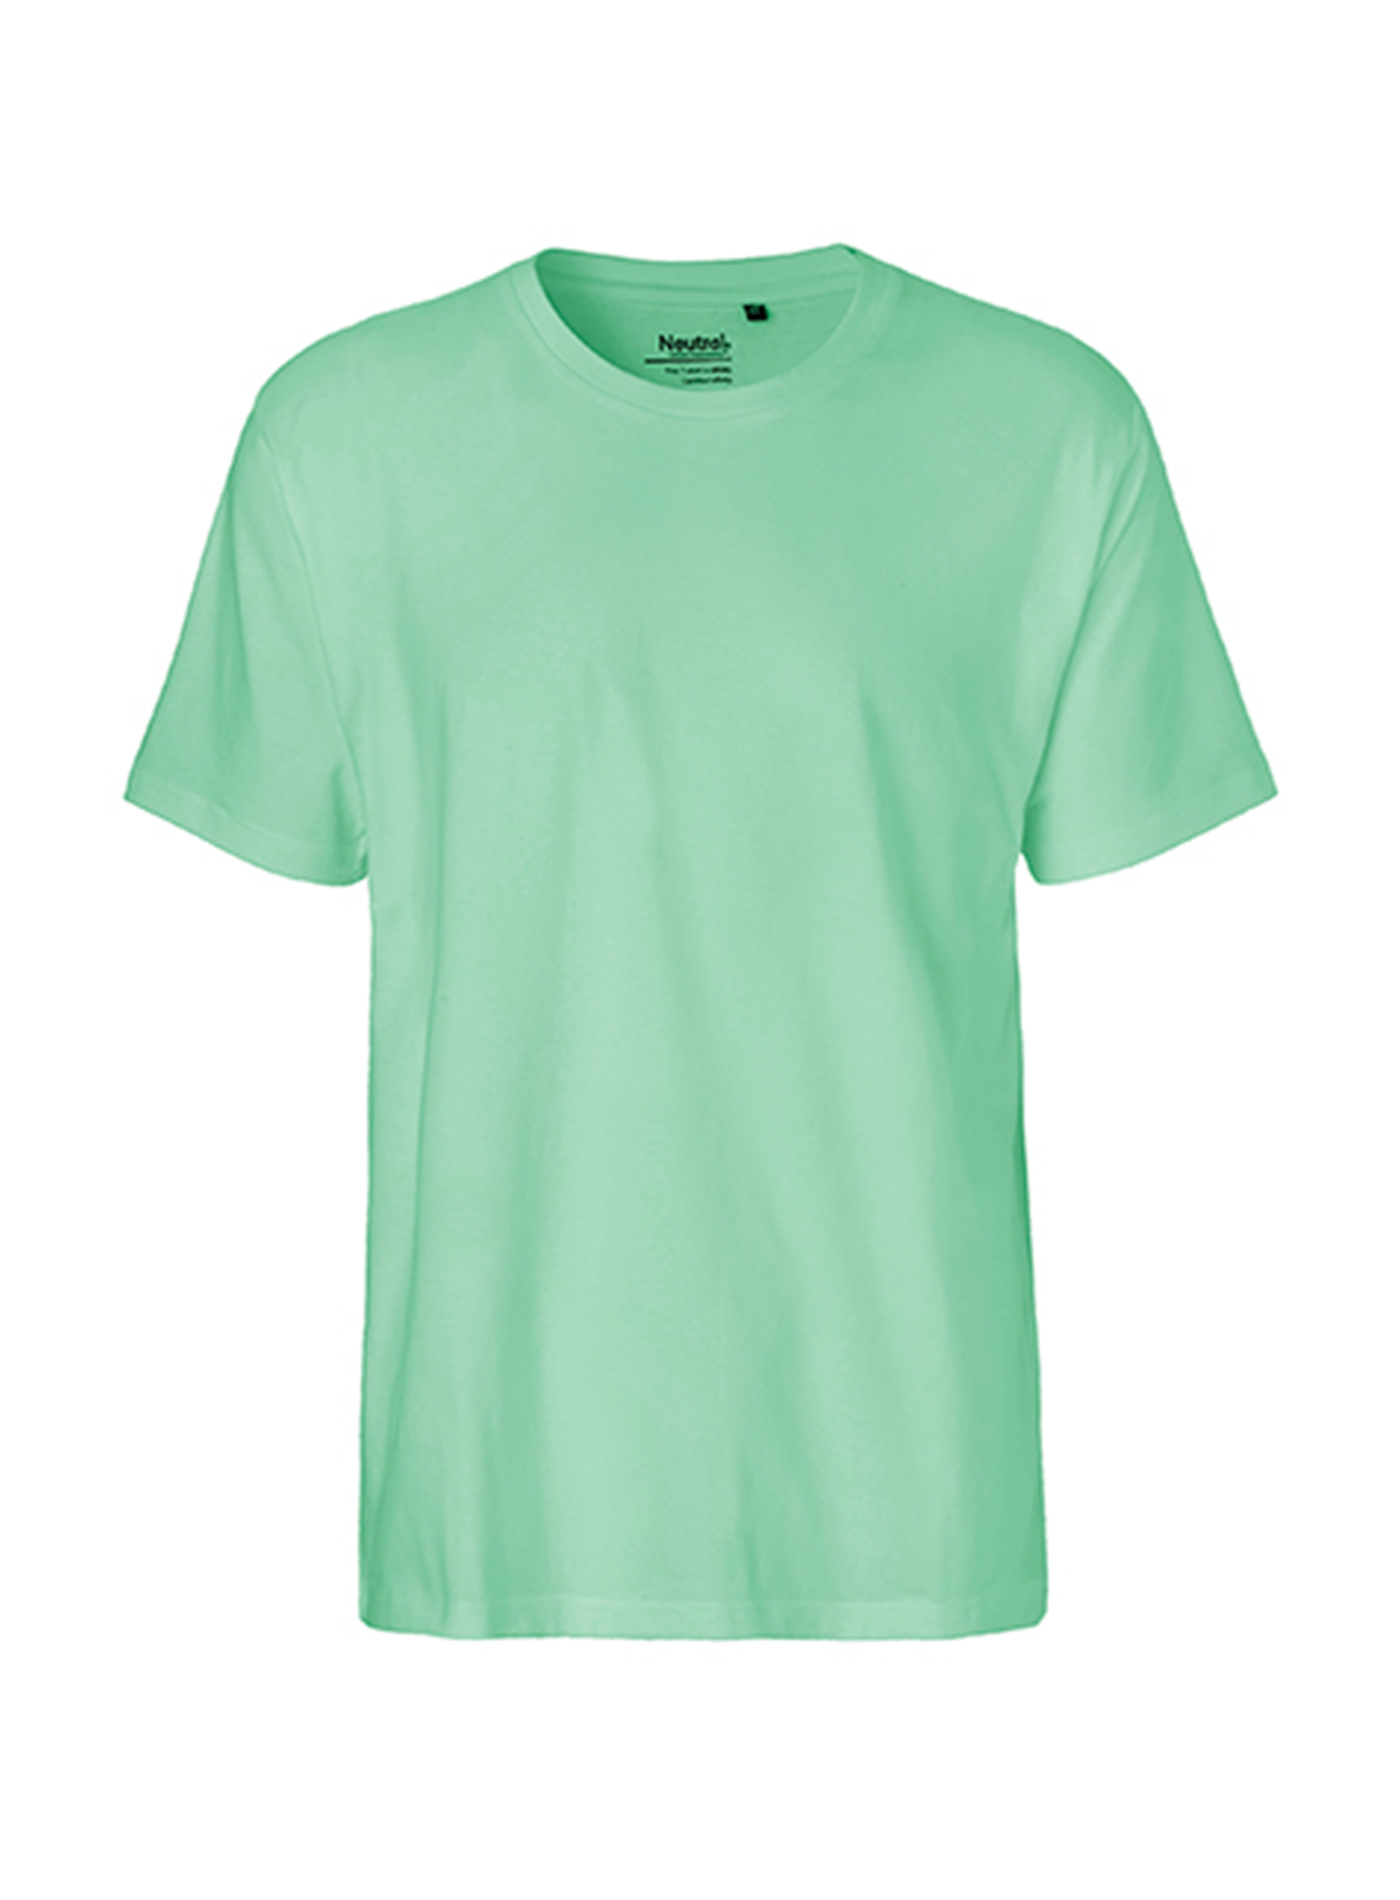 Pánské tričko Neutral Classic - Mentolově zelená S